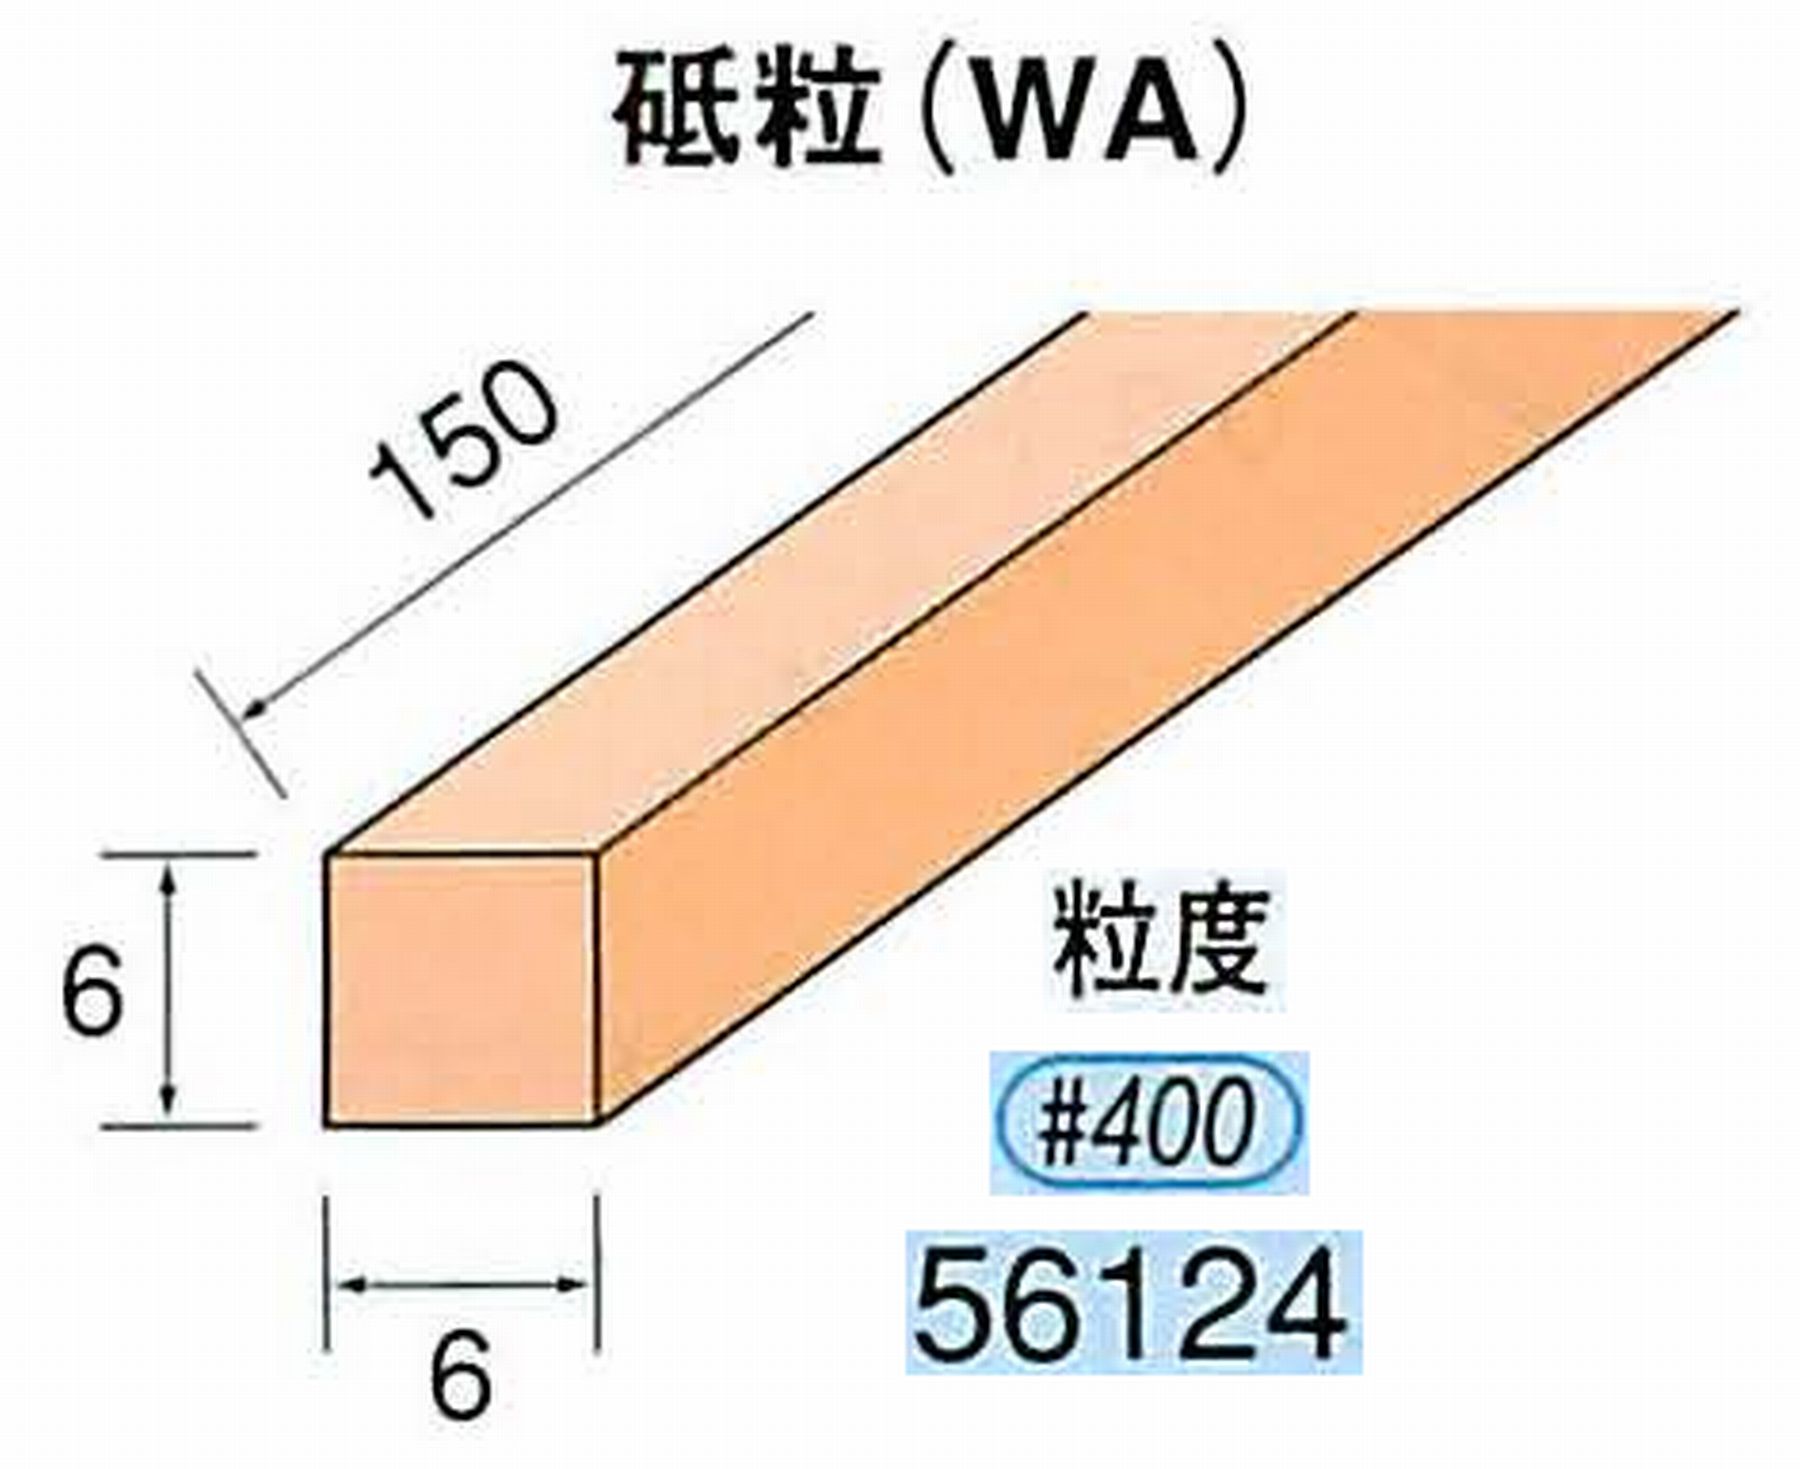 ナカニシ/NAKANISHI スティック砥石 スタンダードシリーズ 砥粒(WA) 56124